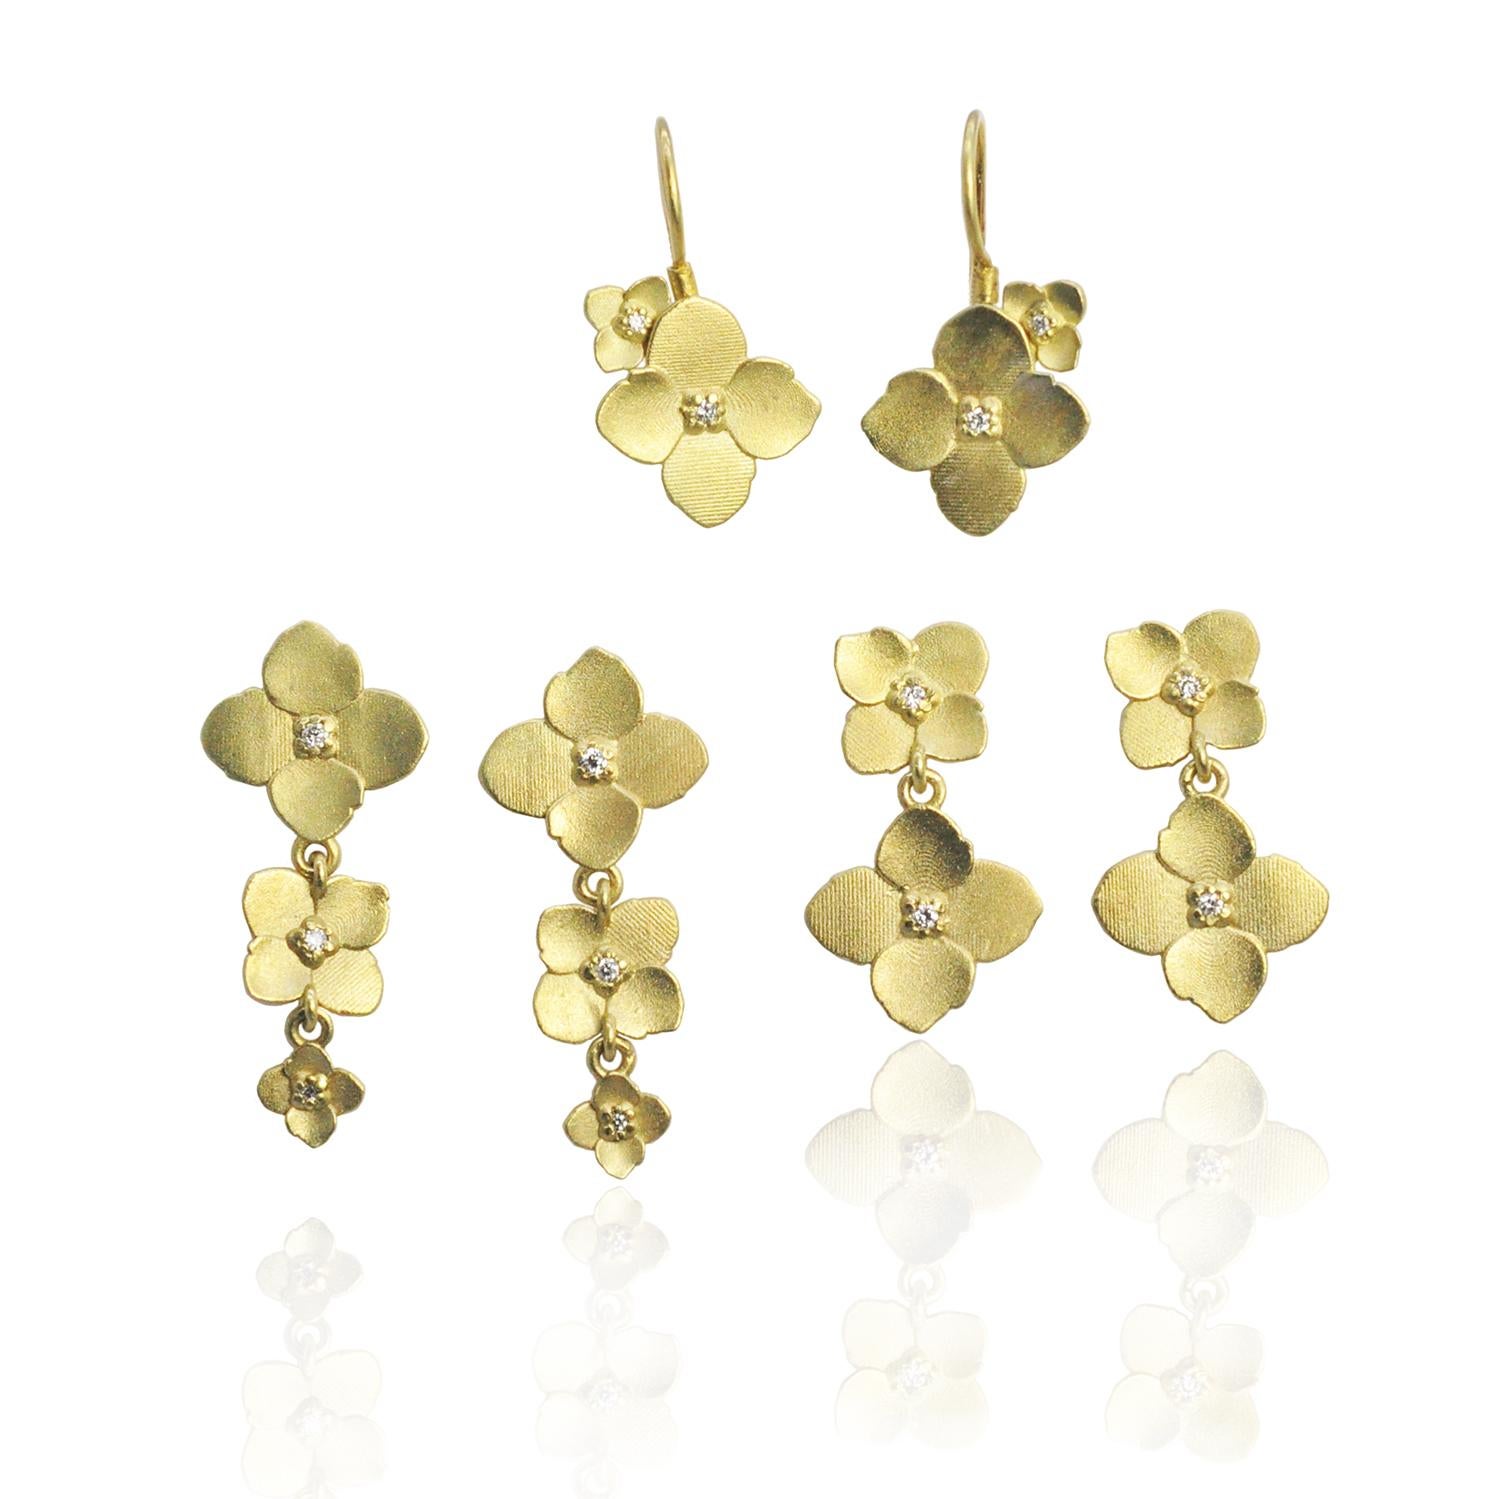 Drei gestapelte Hortensienblüten aus 18 Karat Gold mit Diamanten in der Mitte bilden diese süßen Ohrstecker. Große, mittelgroße und kleine Blüten hängen an den Ohrringstiften nach Größe ab. 

Wir bieten auch goldene Hortensien-Ohrringe mit doppelter